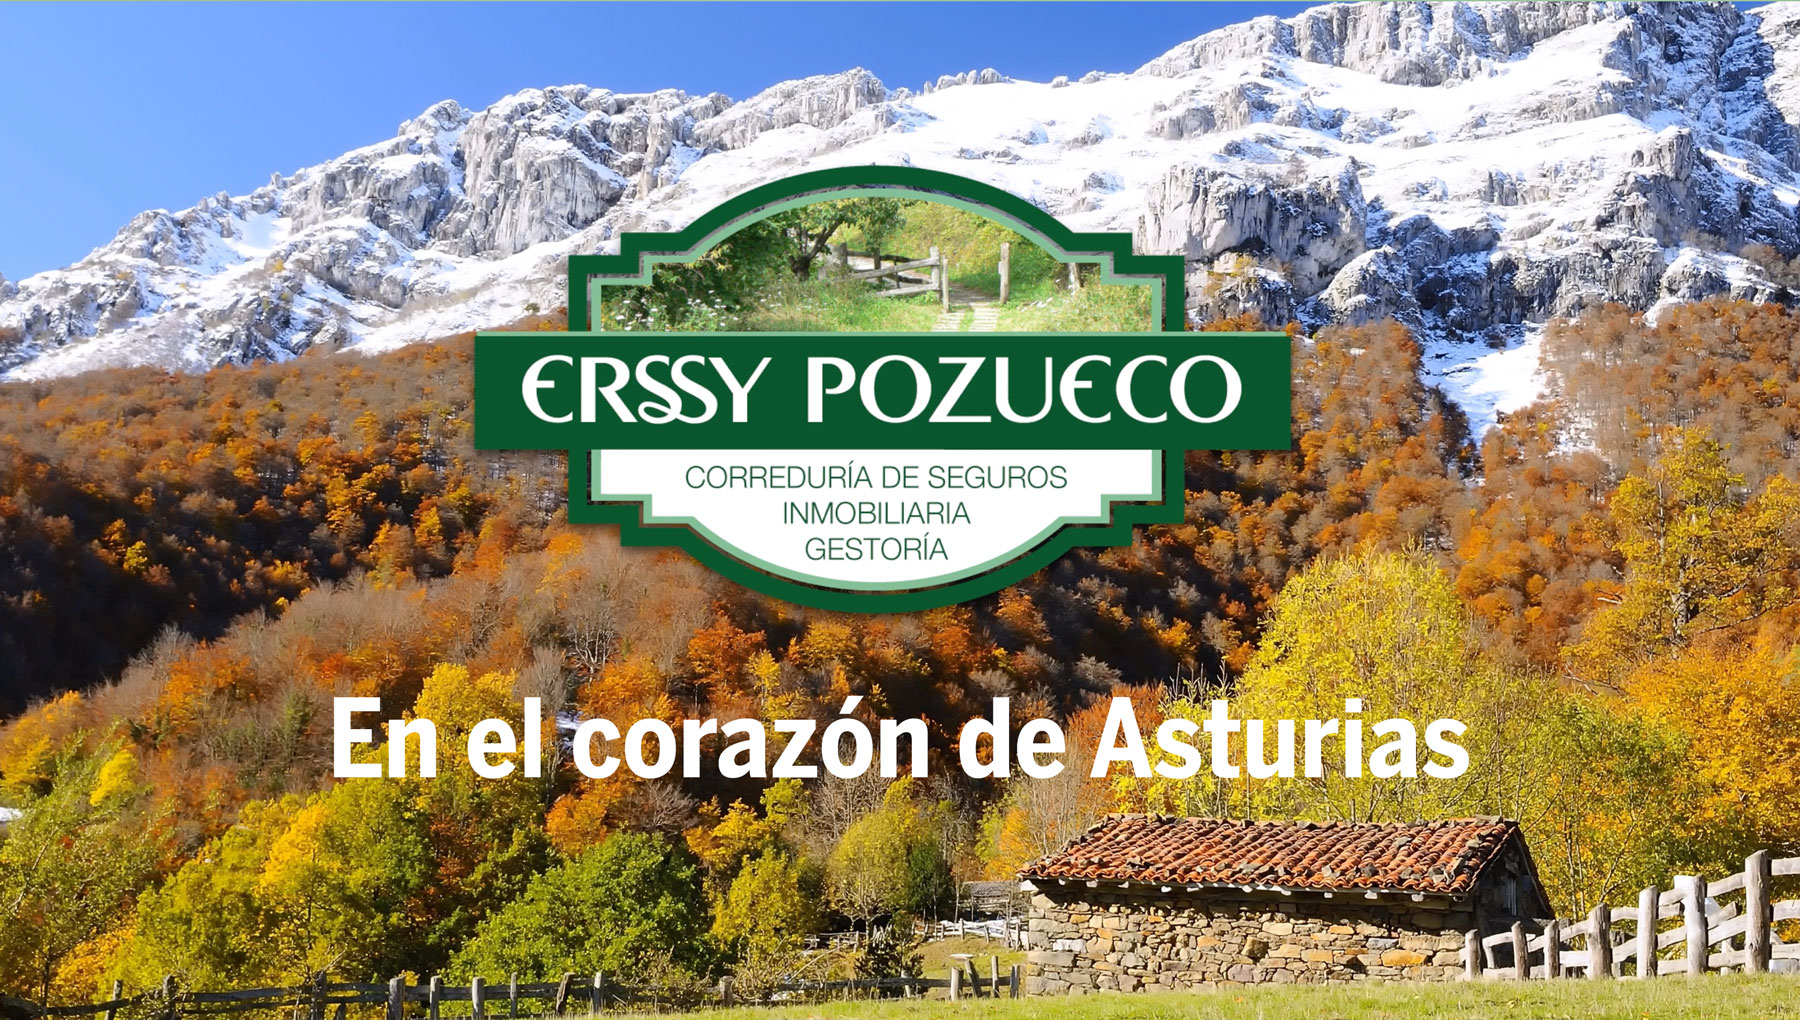 Inmobiliaria Erssy Pozueco en el corazón de Asturias